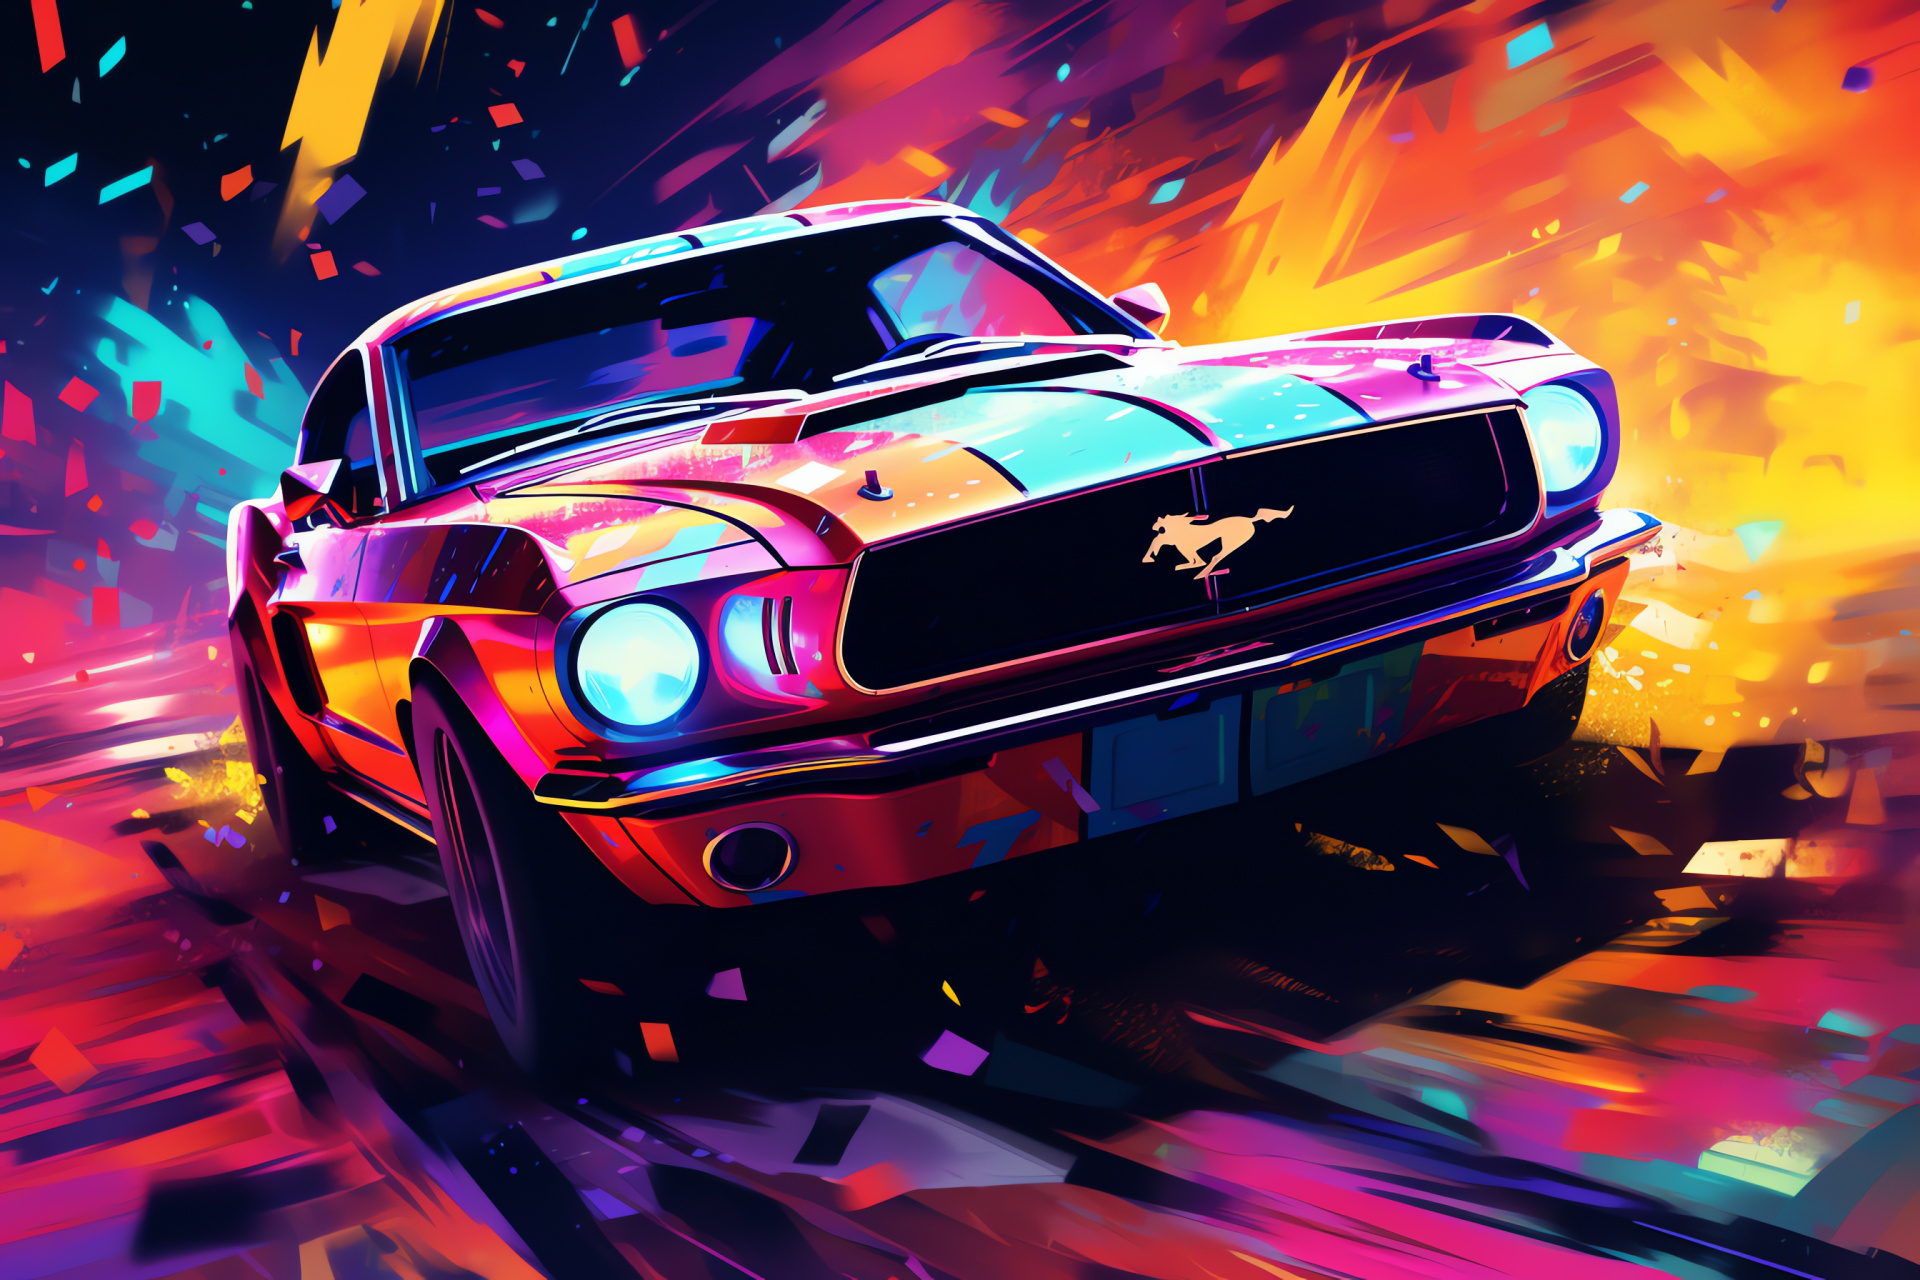 Vivid Mustang, Artistic automotive, Close-up perspective, Psychedelic interpretation, Neon canvas, HD Desktop Image